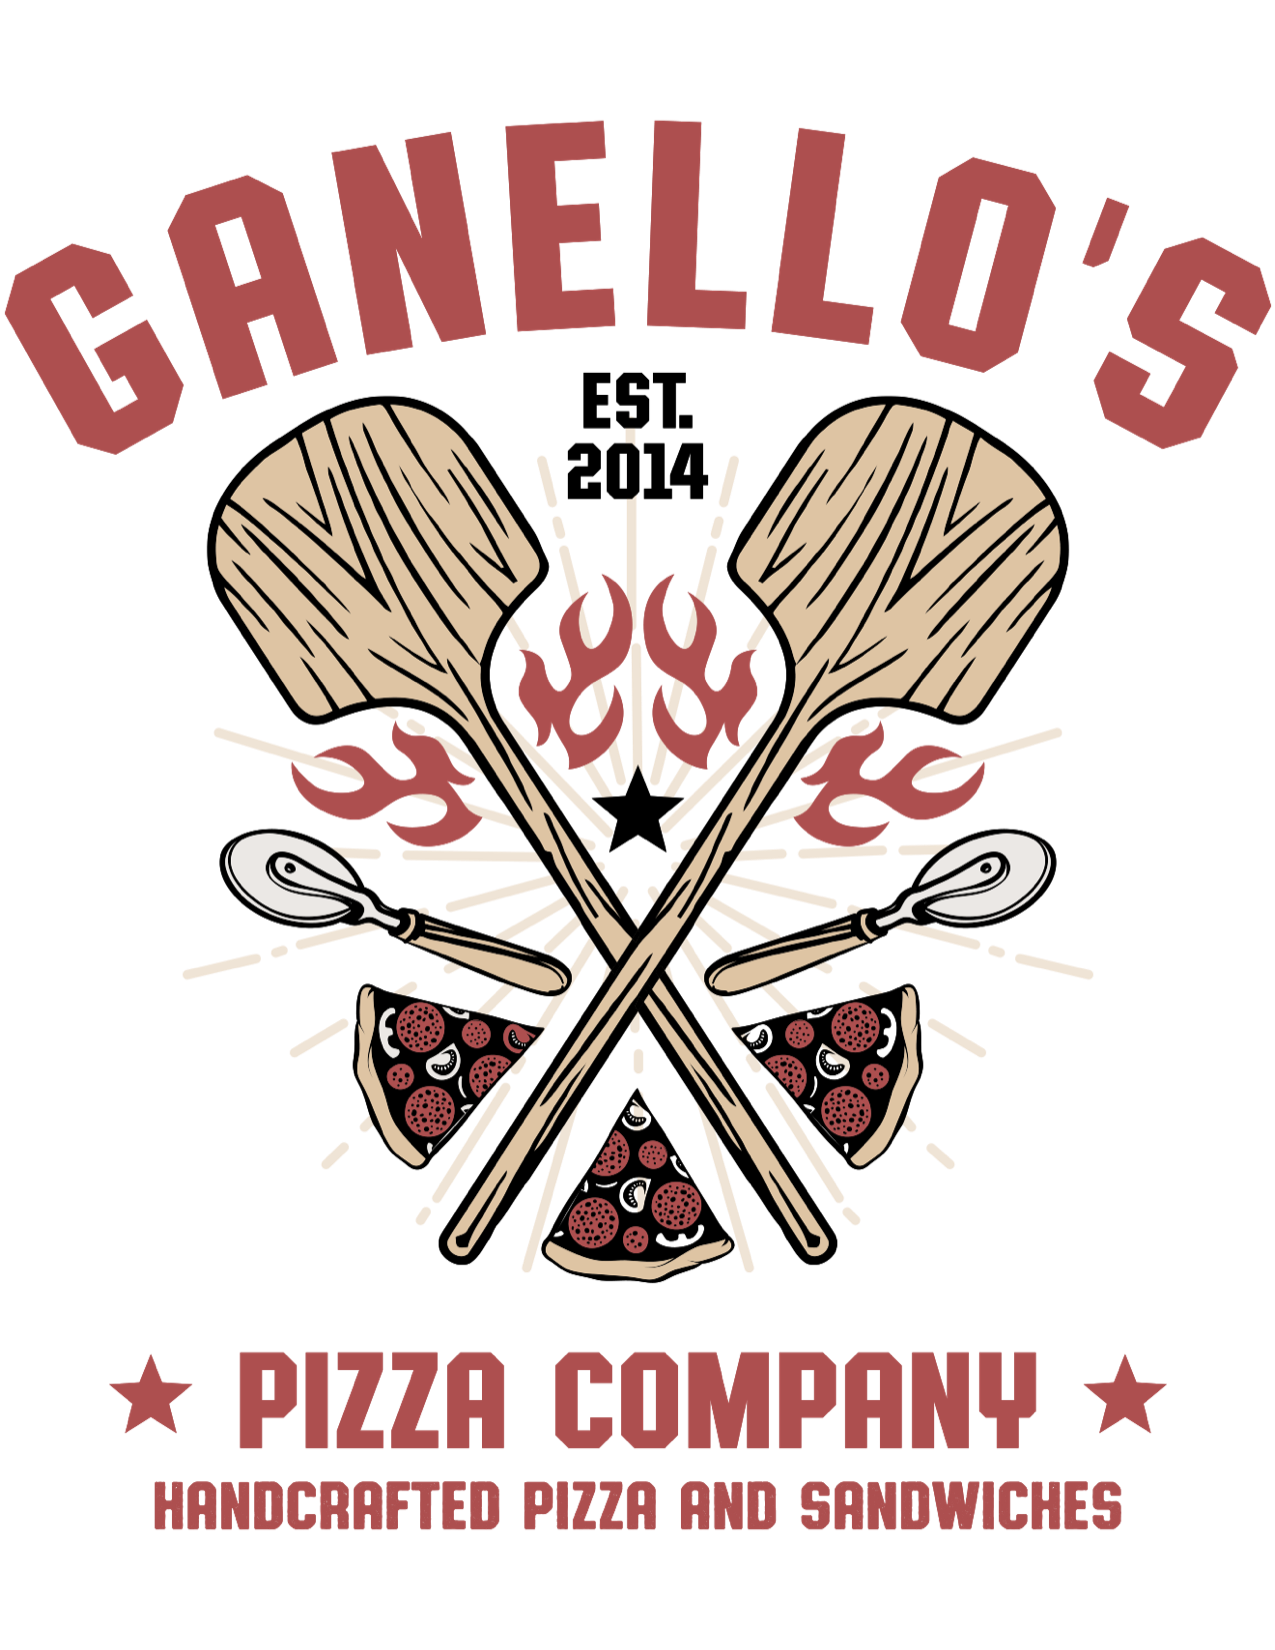 Gannello's Homepage